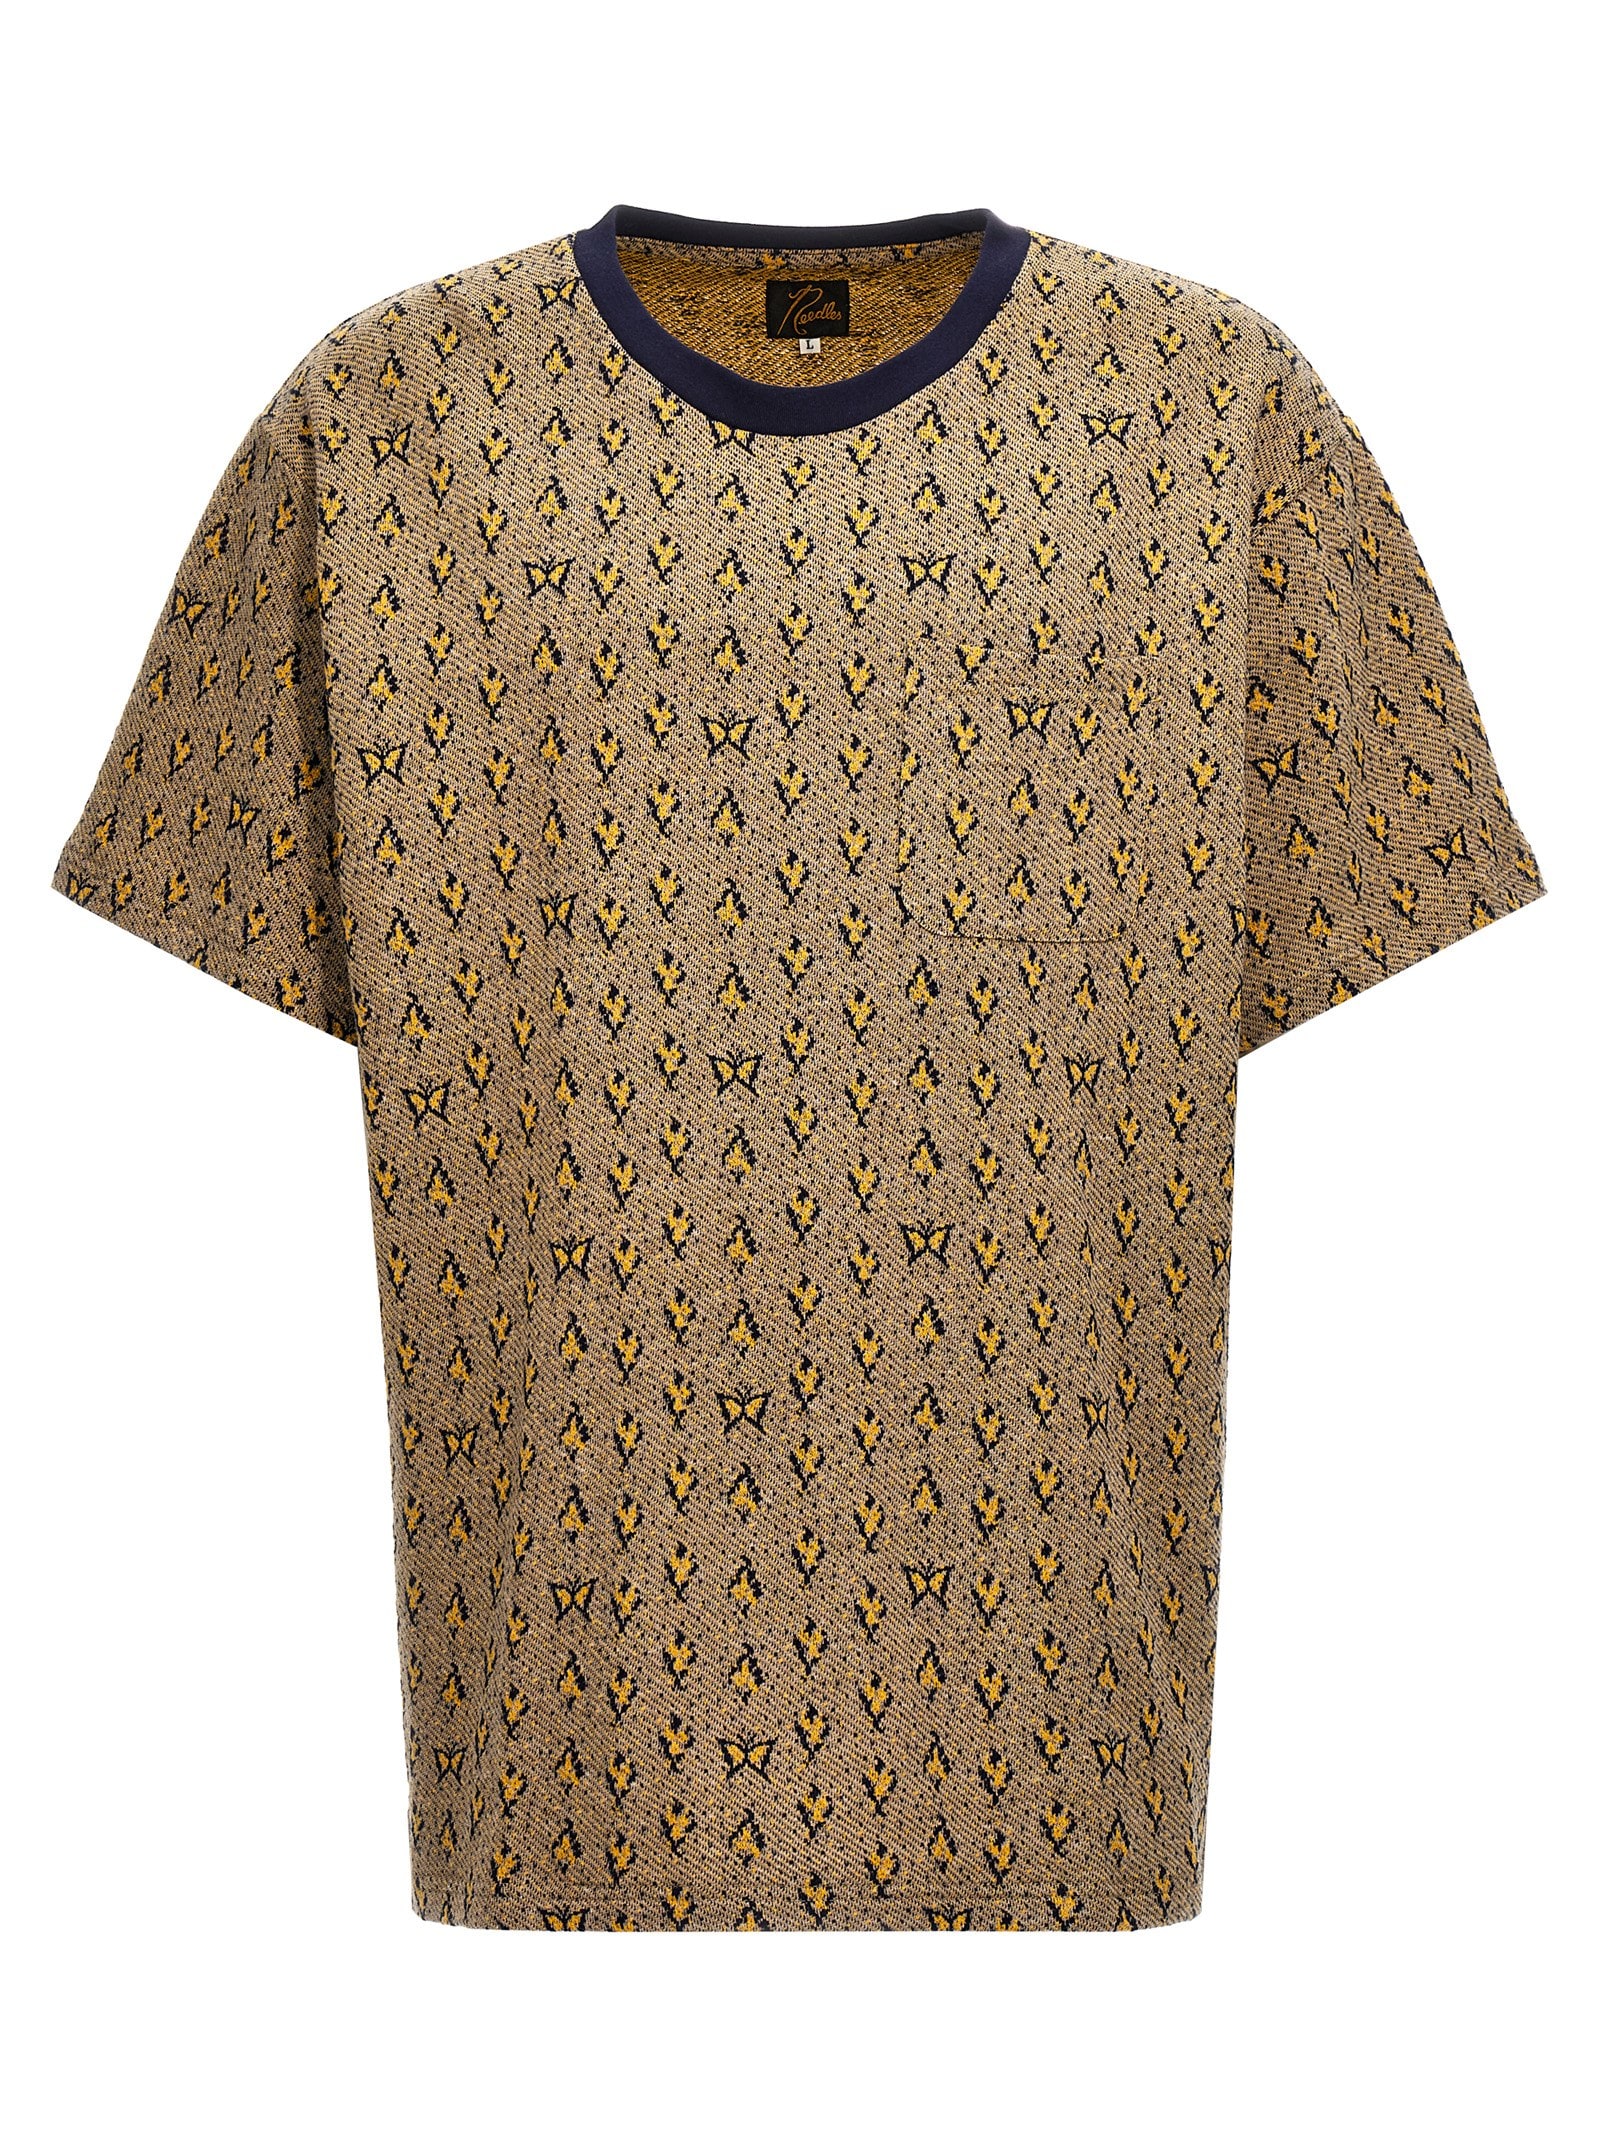 Jacquard Patterned T-shirt